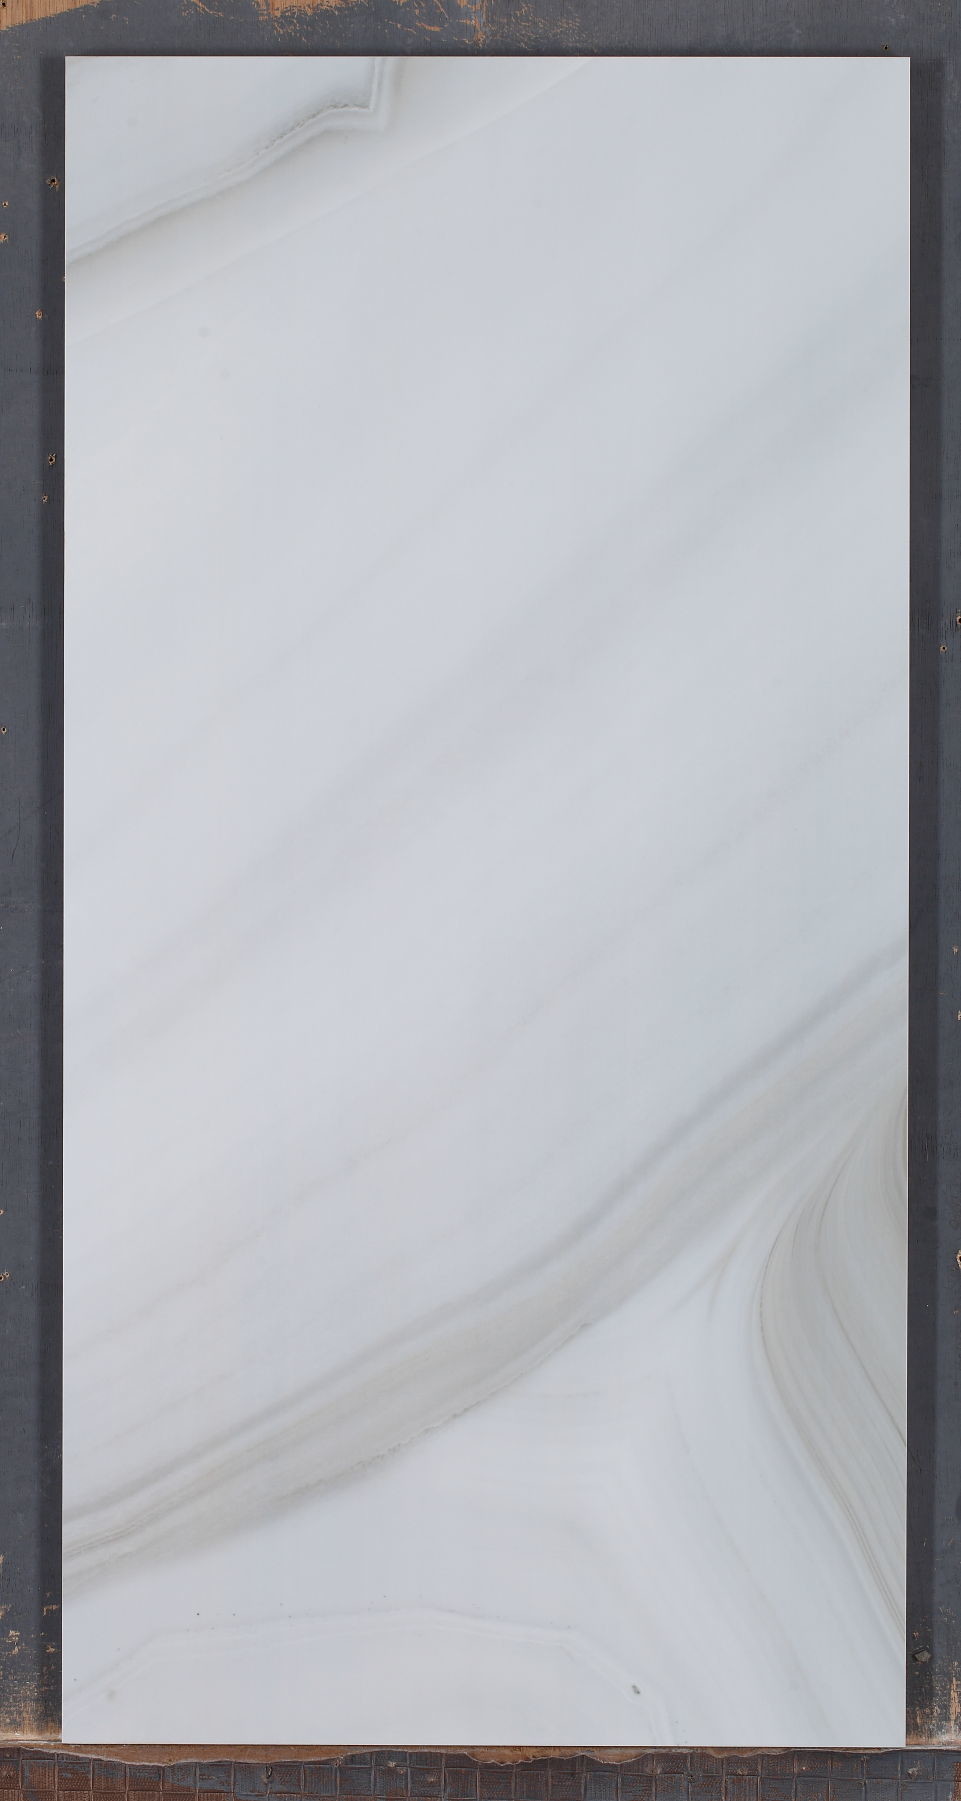 Agata lustrata Grey Color Acid delle mattonelle della parete della porcellana lucidata Digital - resistente